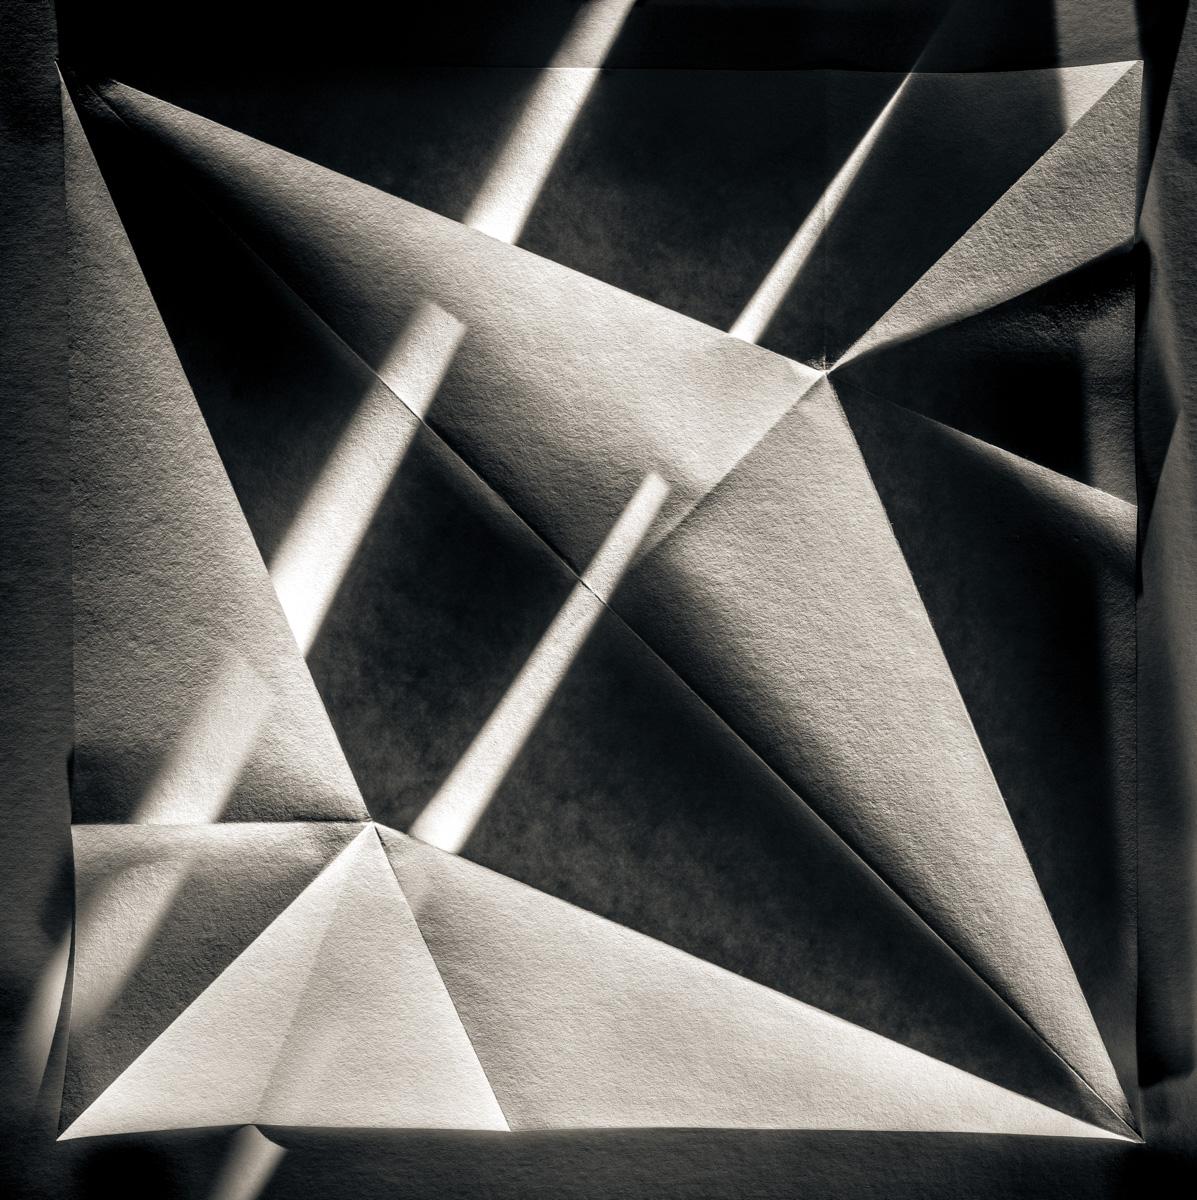 Black and White Photograph Howard Lewis - Origami Folds photo noir et blanc en édition limitée n° 18 